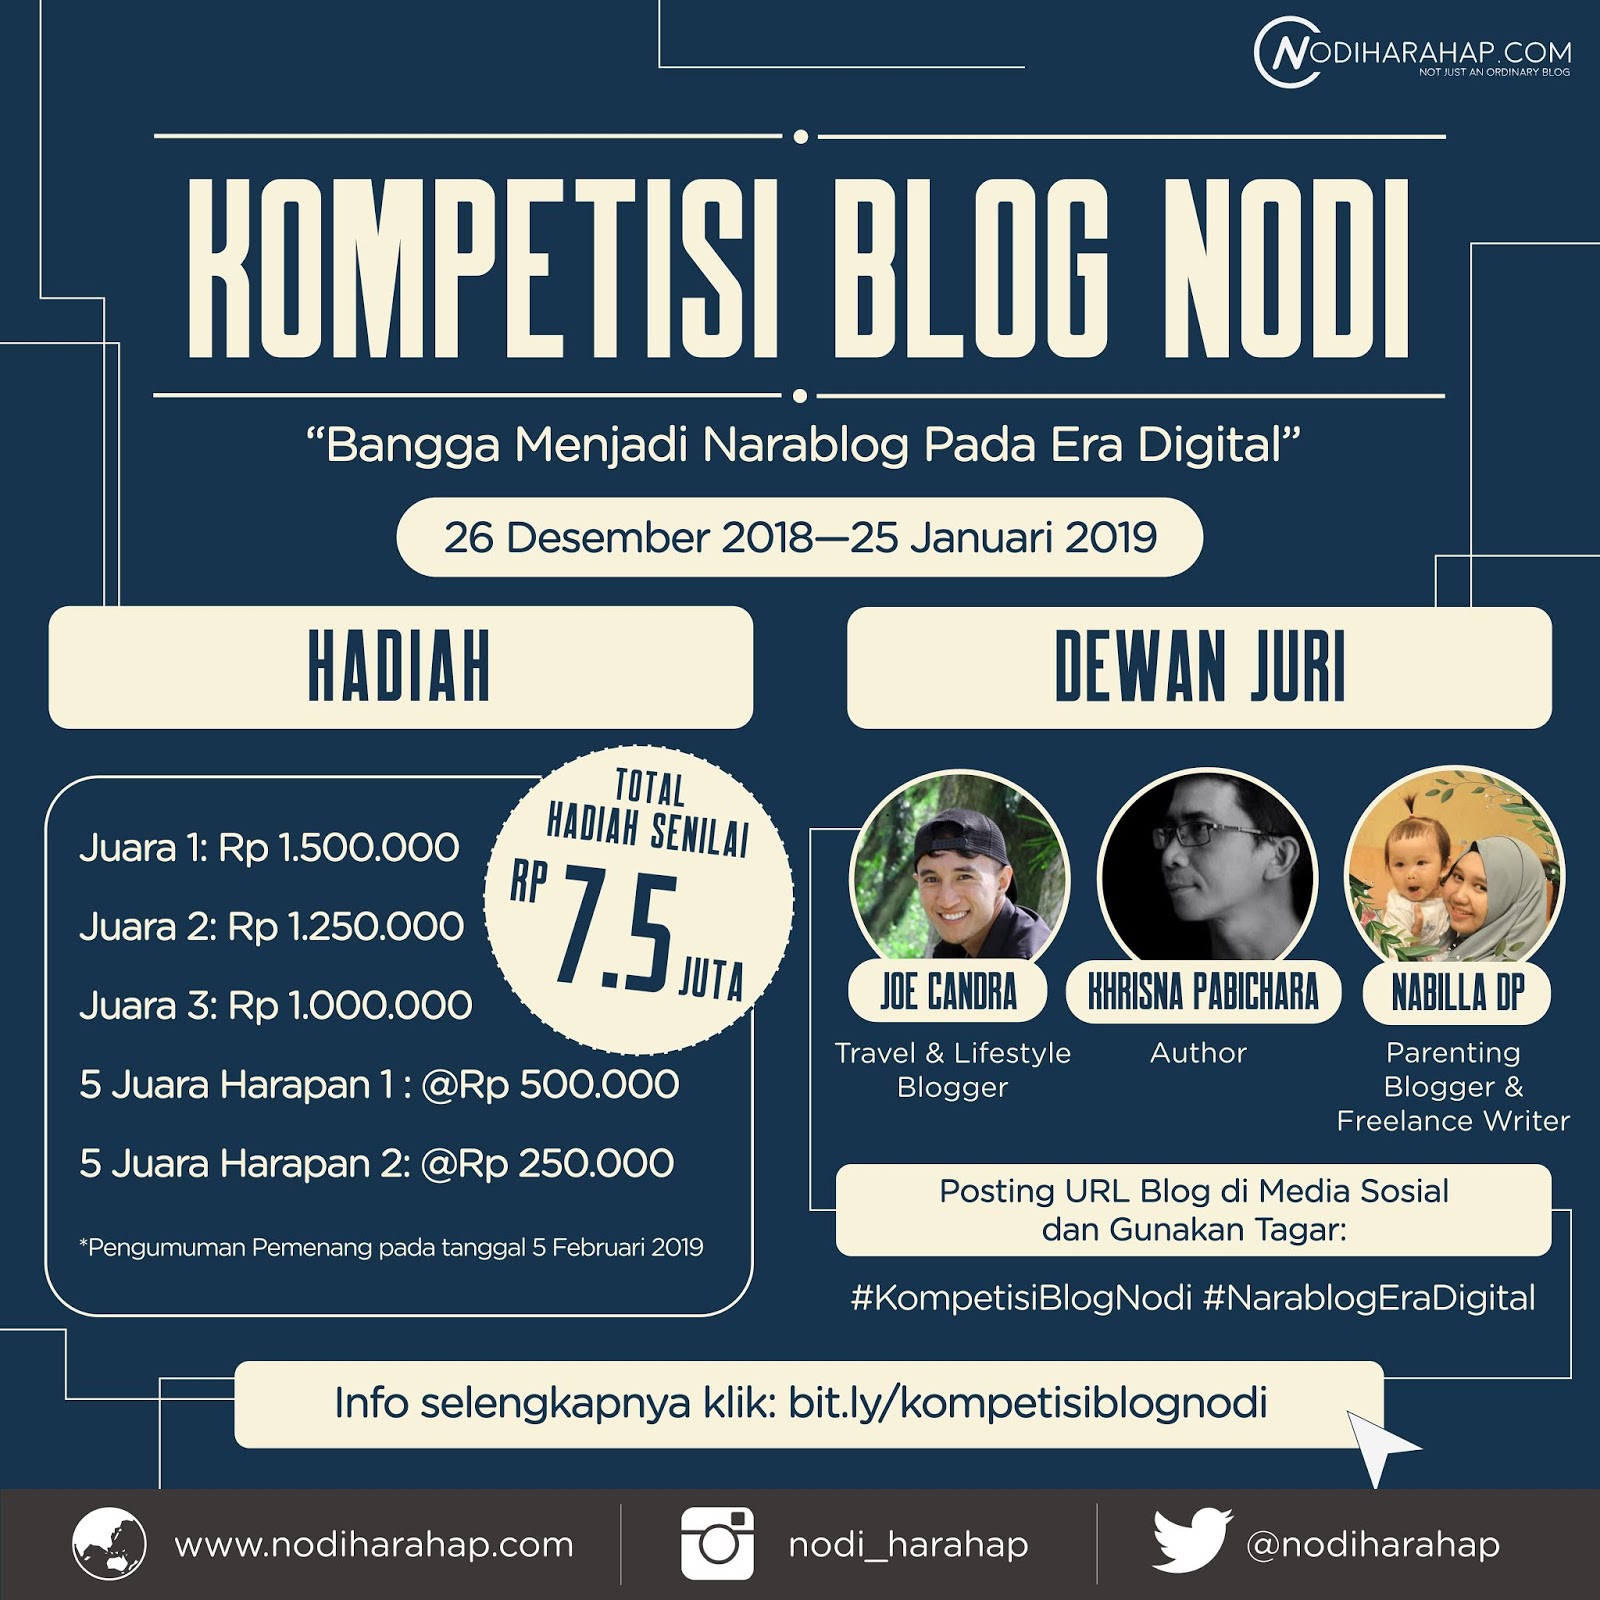 Kompetisi Blog Nodi